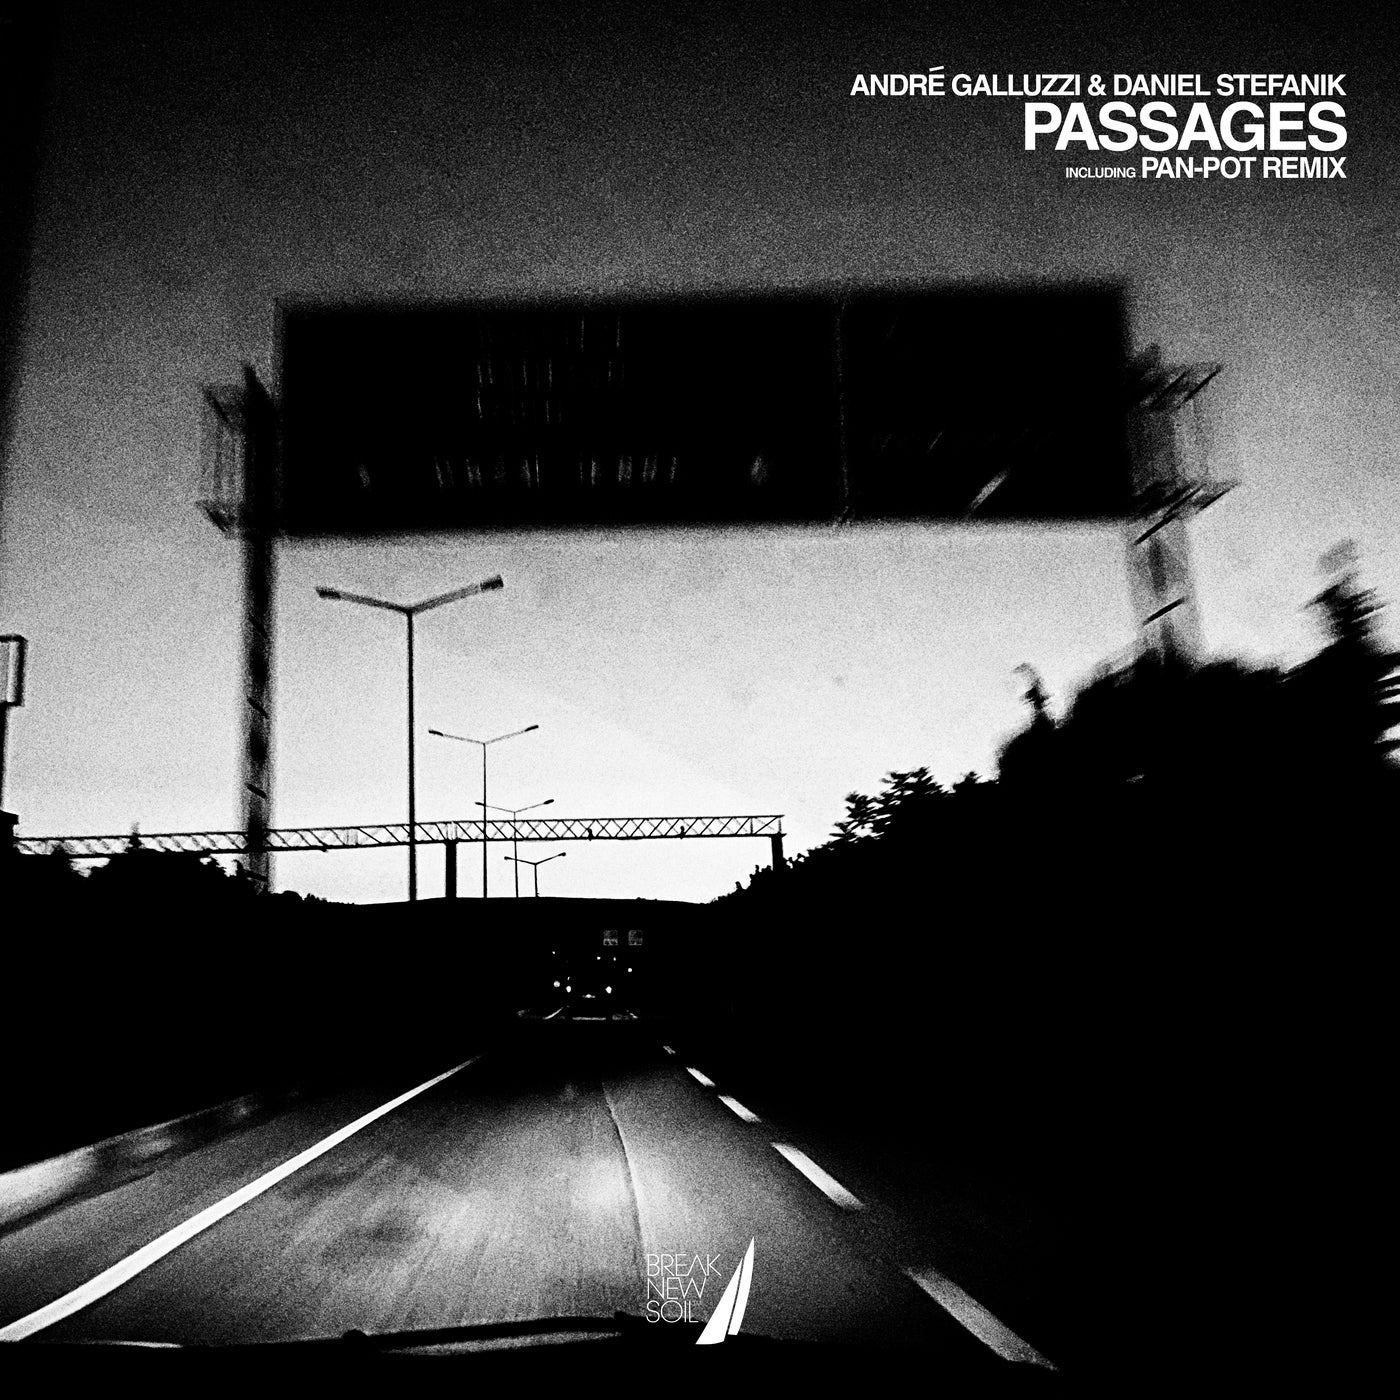 image cover: Daniel Stefanik & Andre Galluzzi - Passages (+Pan-Pot Remix) on Break New Soil Recordings